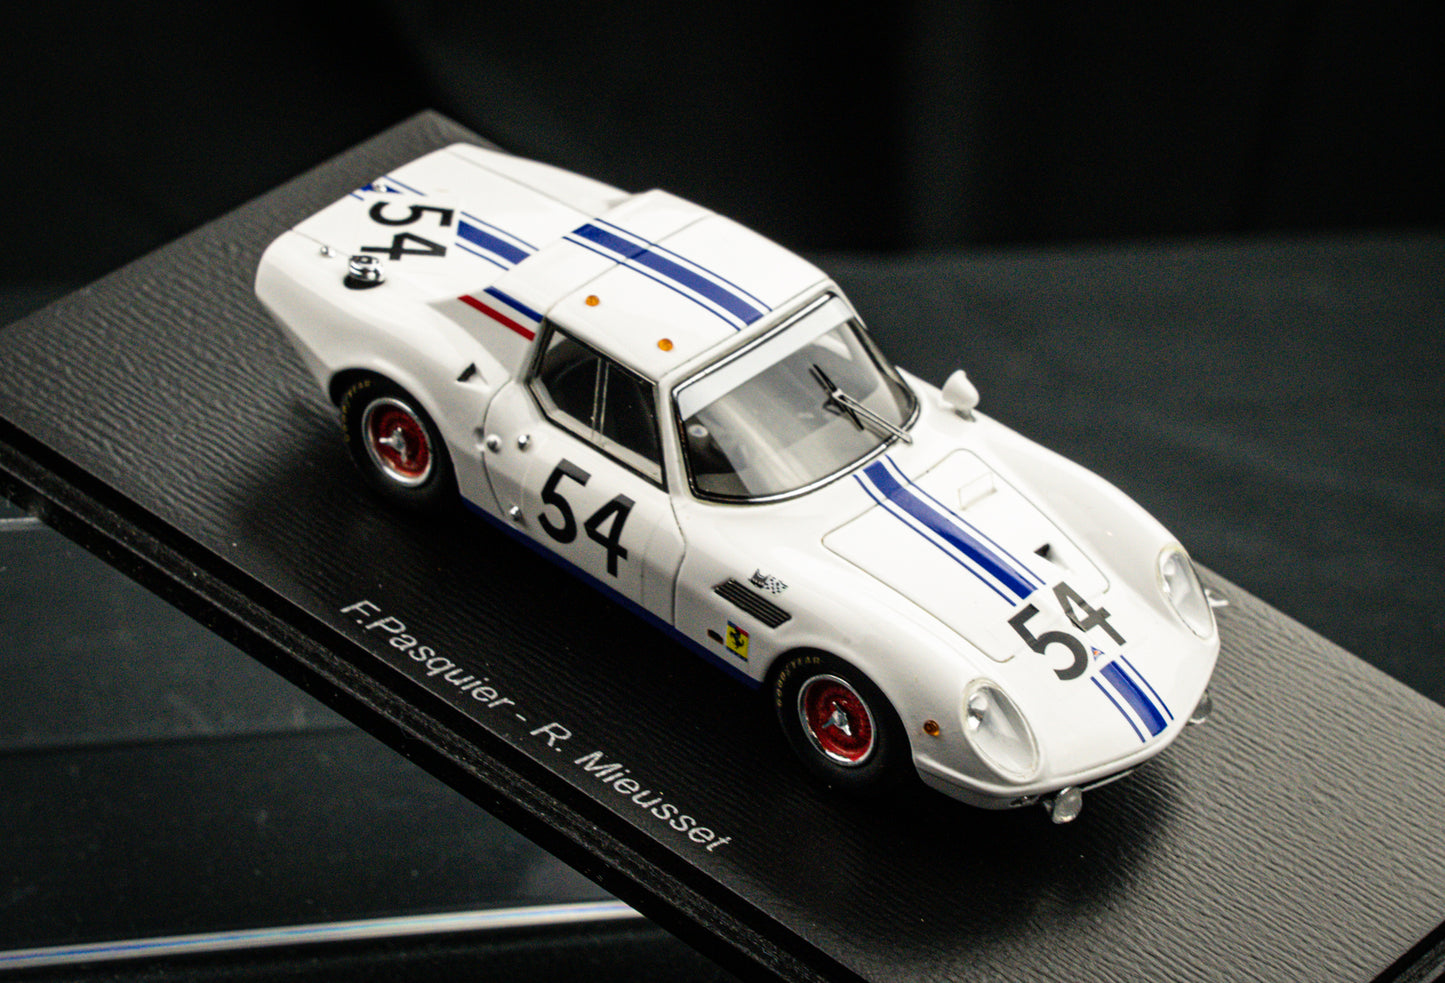 ASA GT RB613 #54 F. Pasquier / R. Mieusset - 24h LeMans 1966 - Spark 1:43